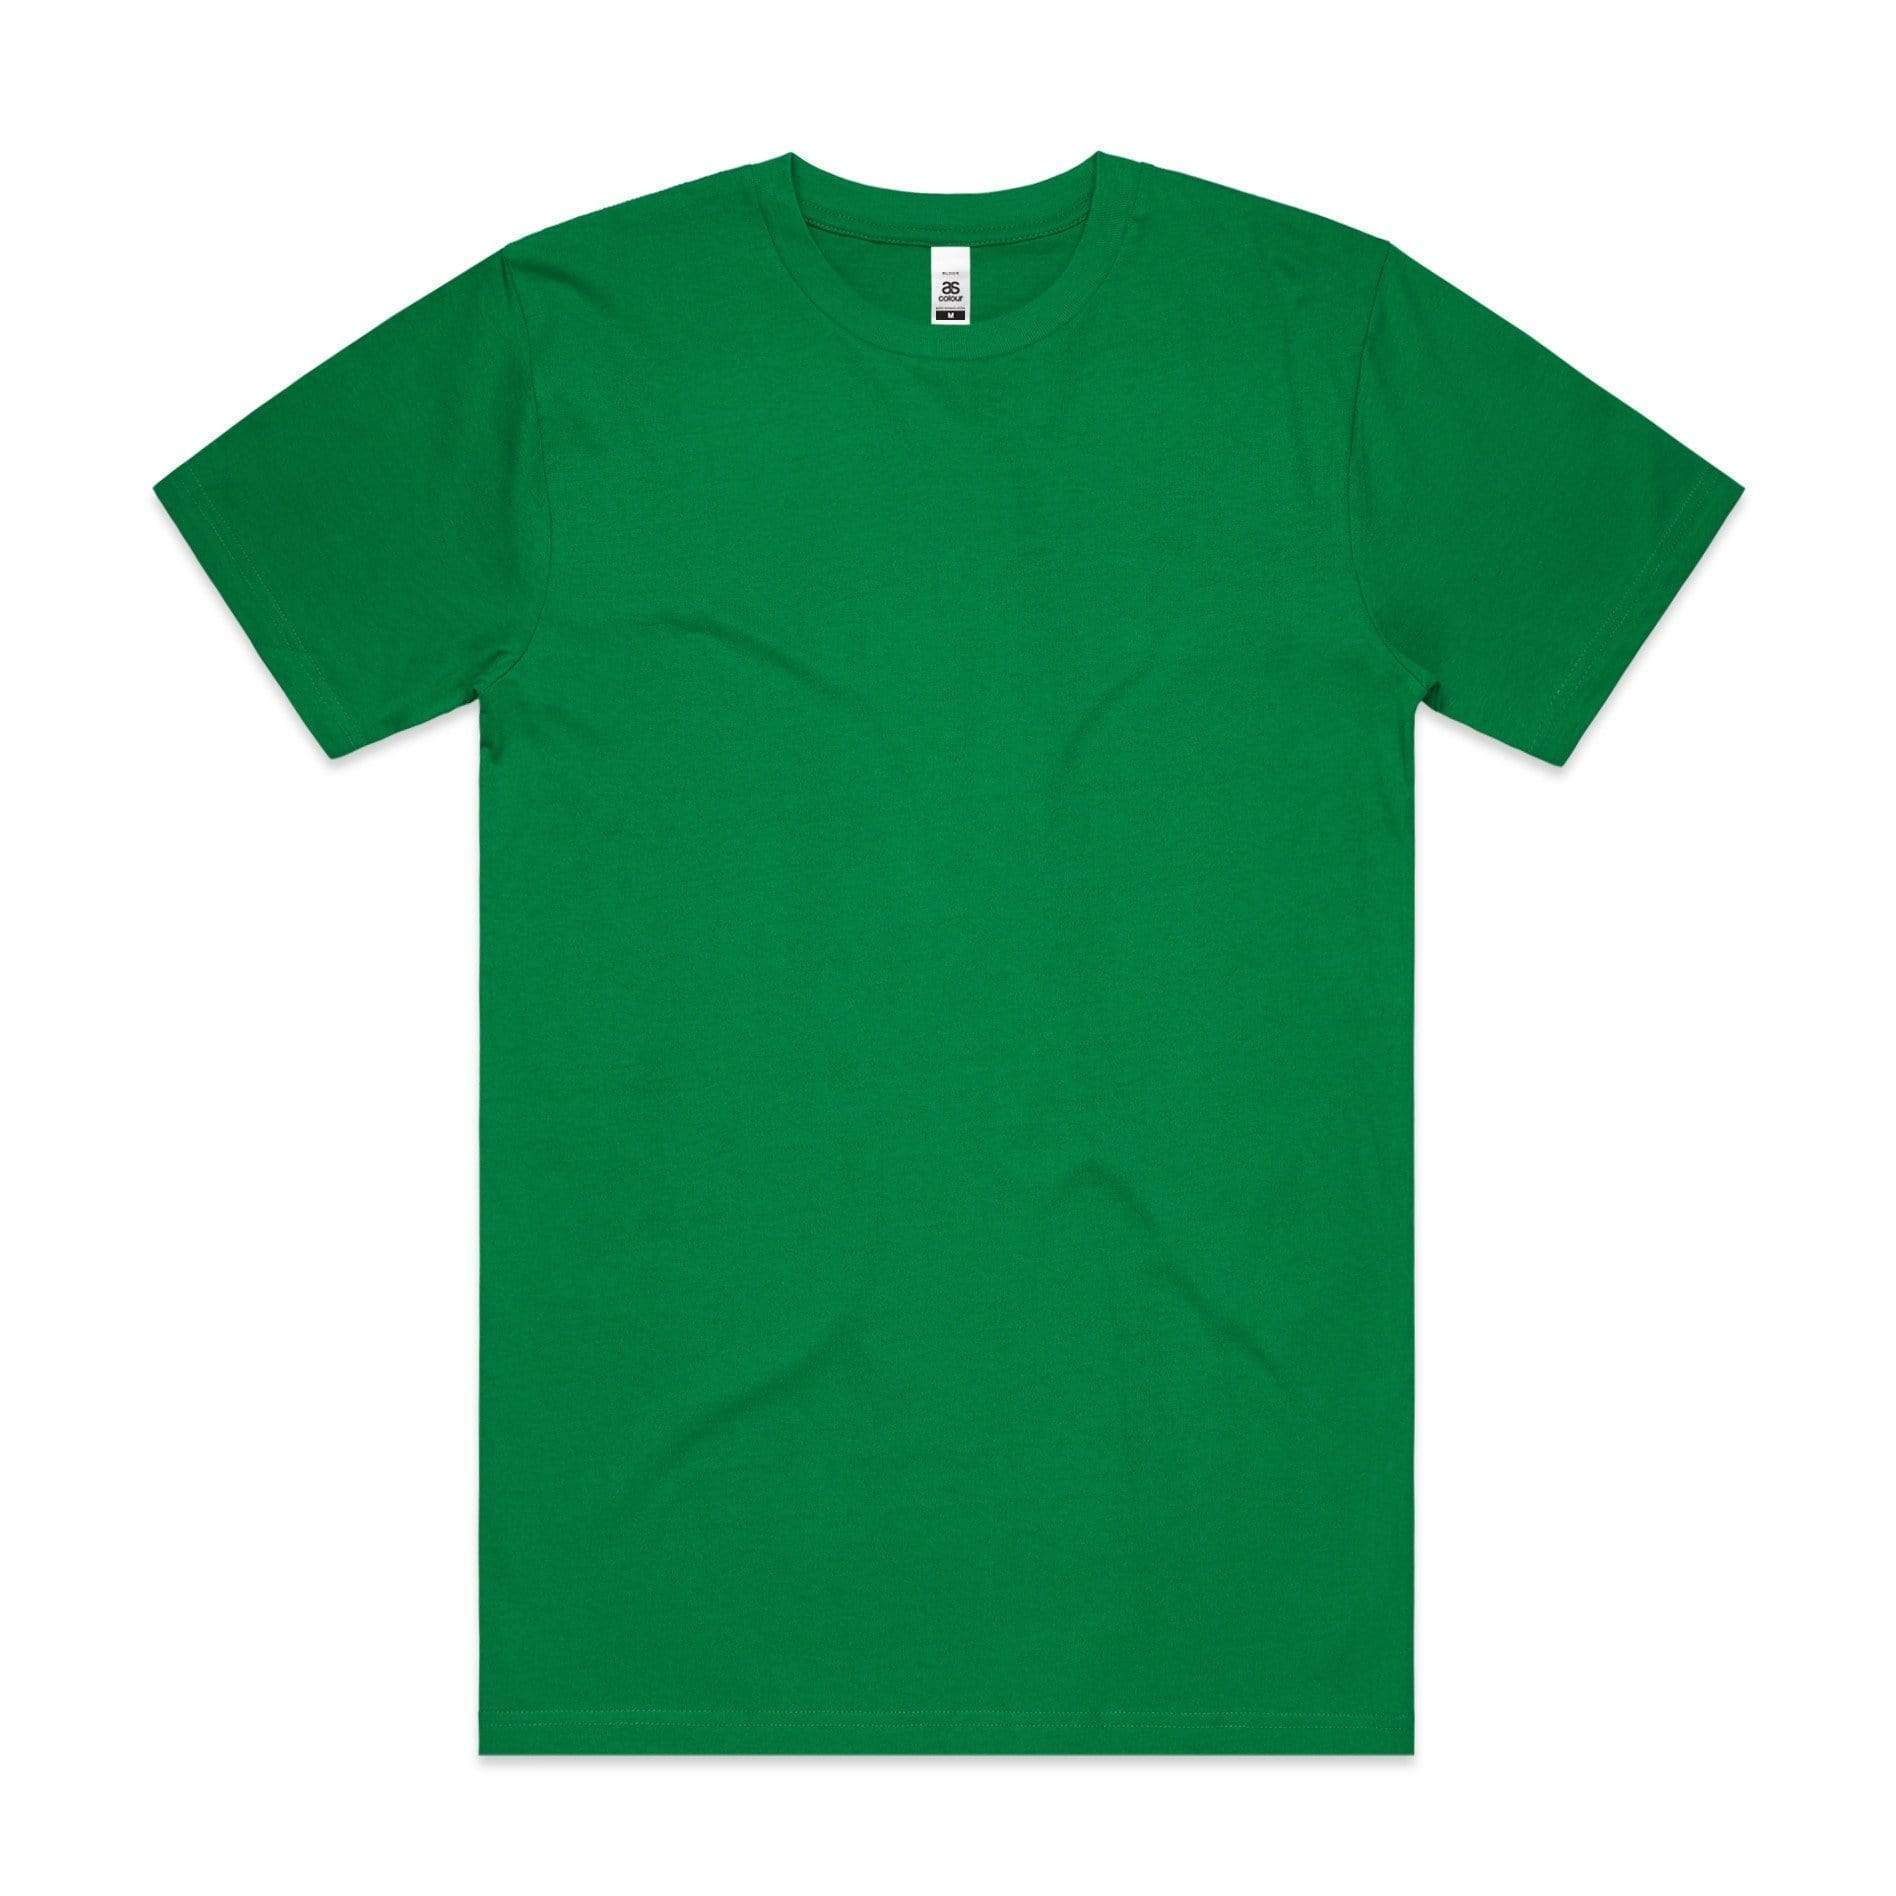 As Colour Casual Wear KELLY GREEN / SML As Colour Men's block tee 5050